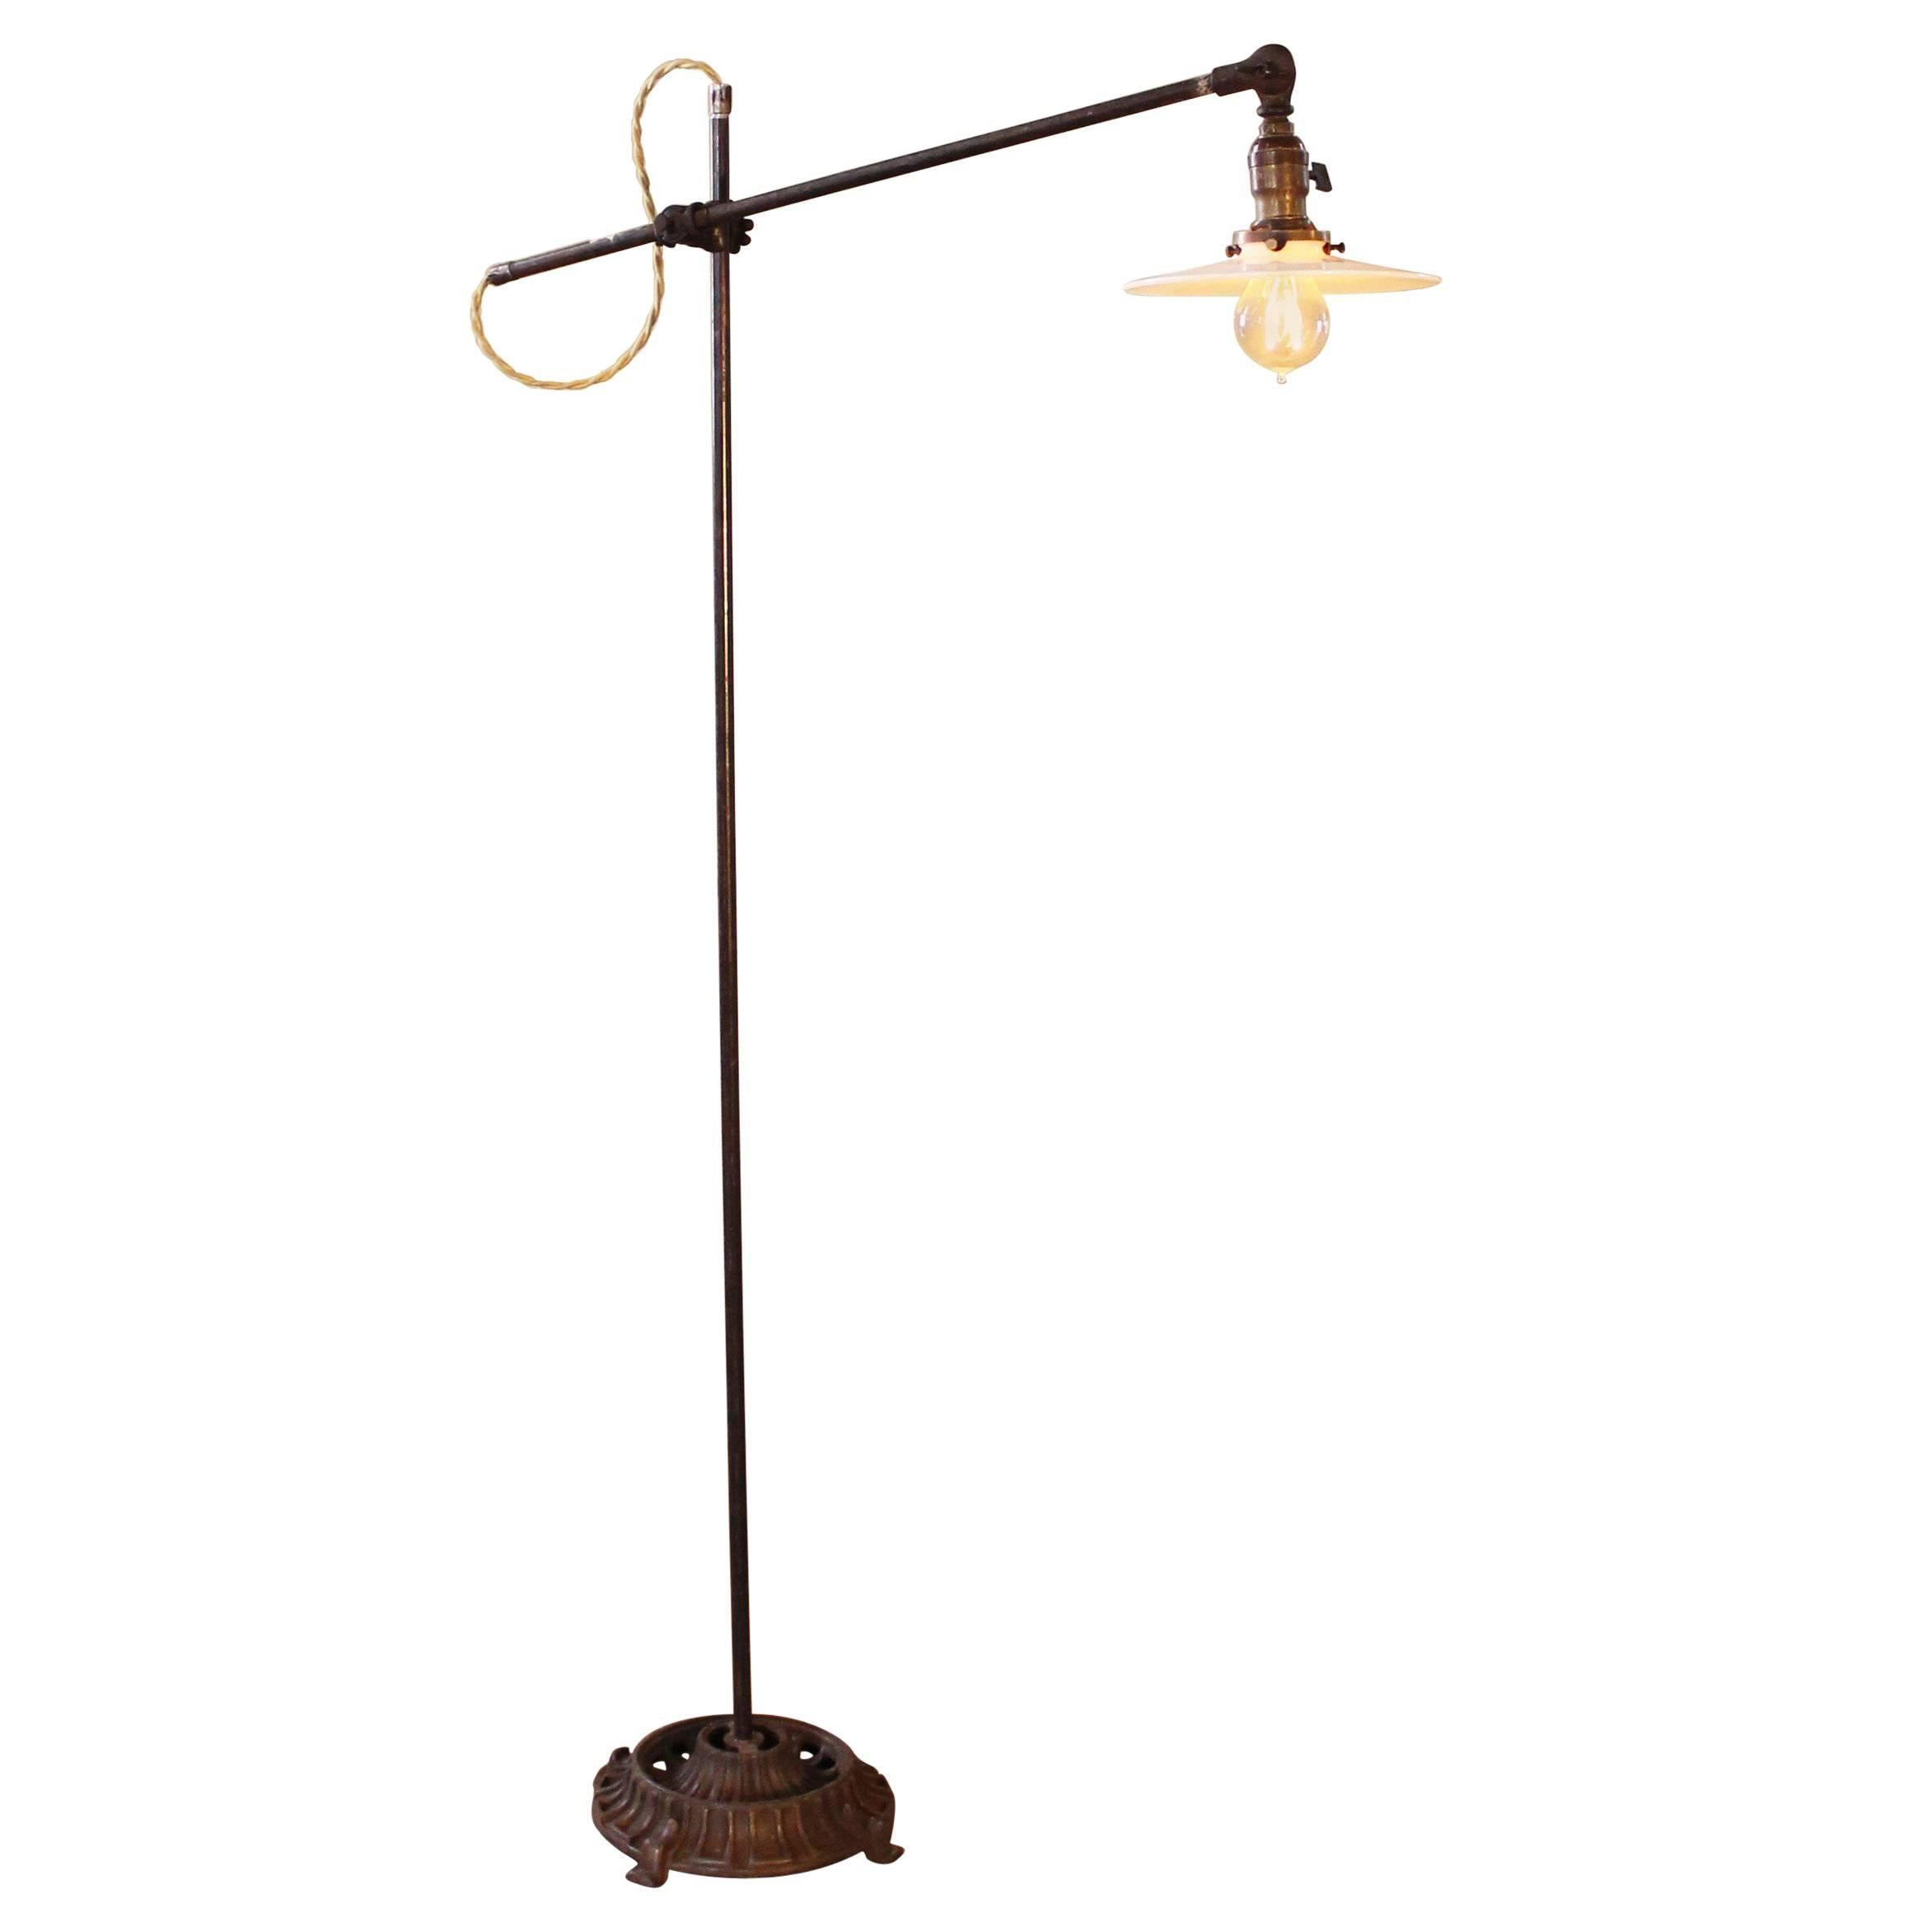 Vintage Floor Task Lamp Light Industrial Milk Glass Metal Iron Adjustable 